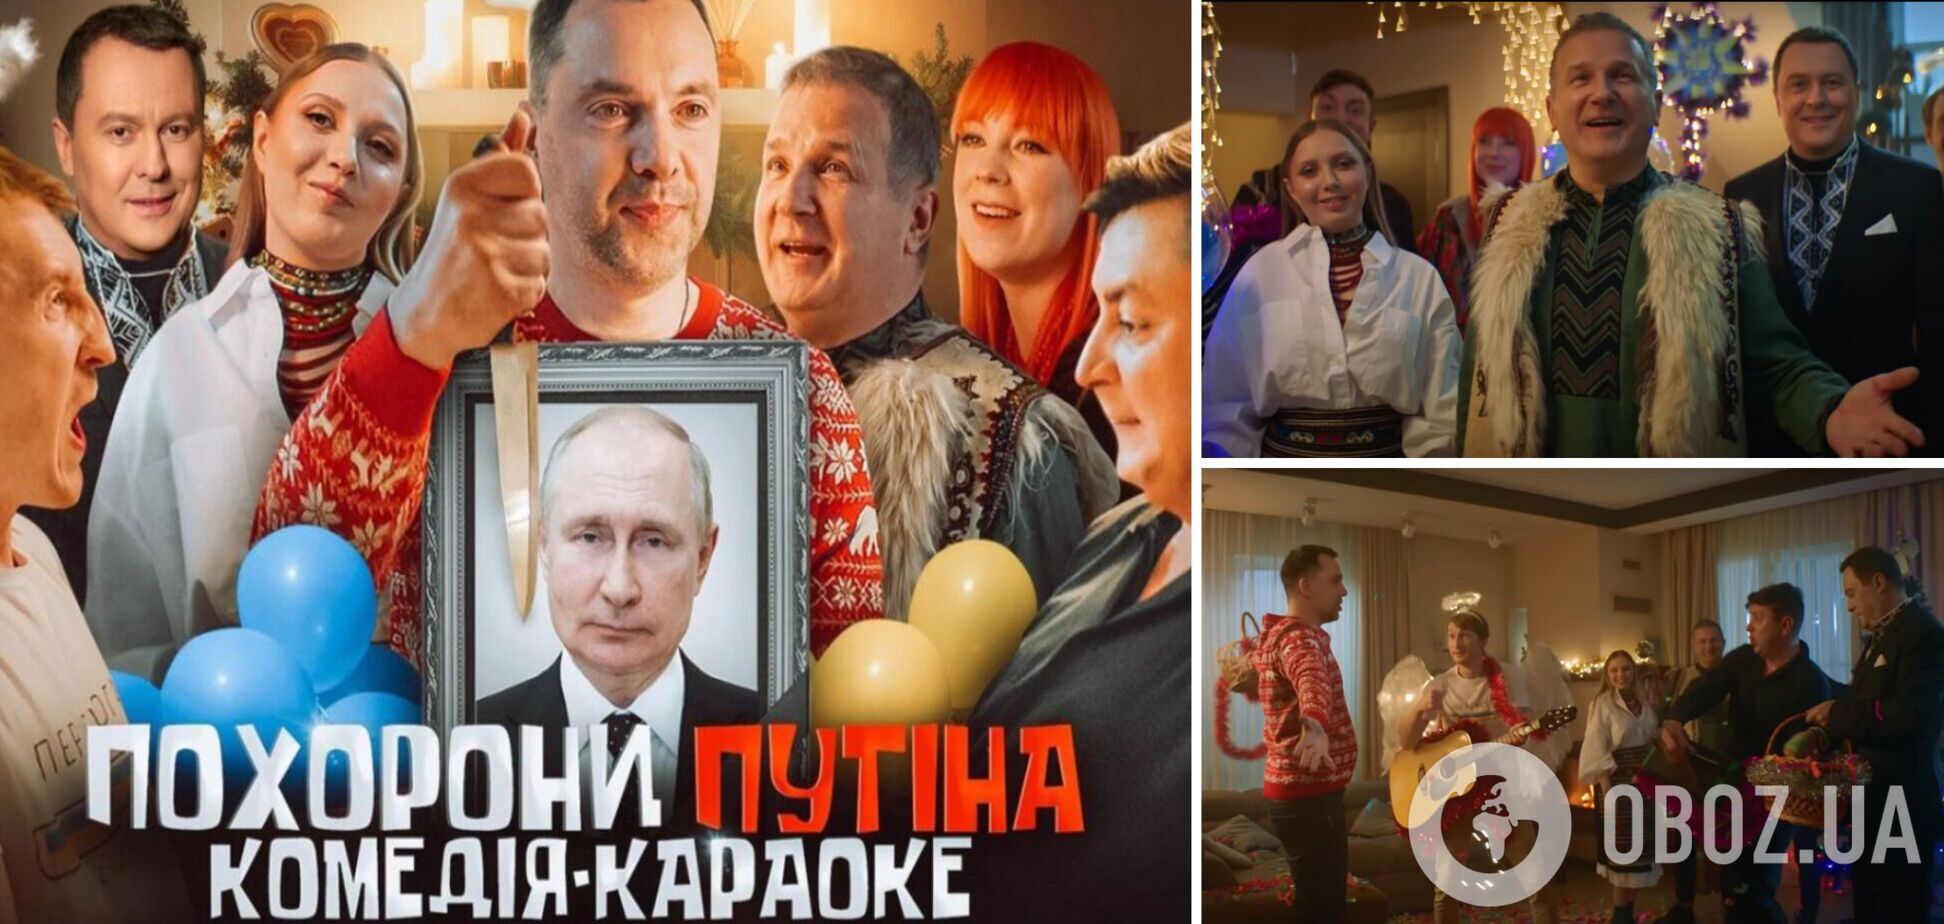 Юрий Горбунов представил тизер нового проекта 'Похороны путина': этот день настал, празднуют все! Видео